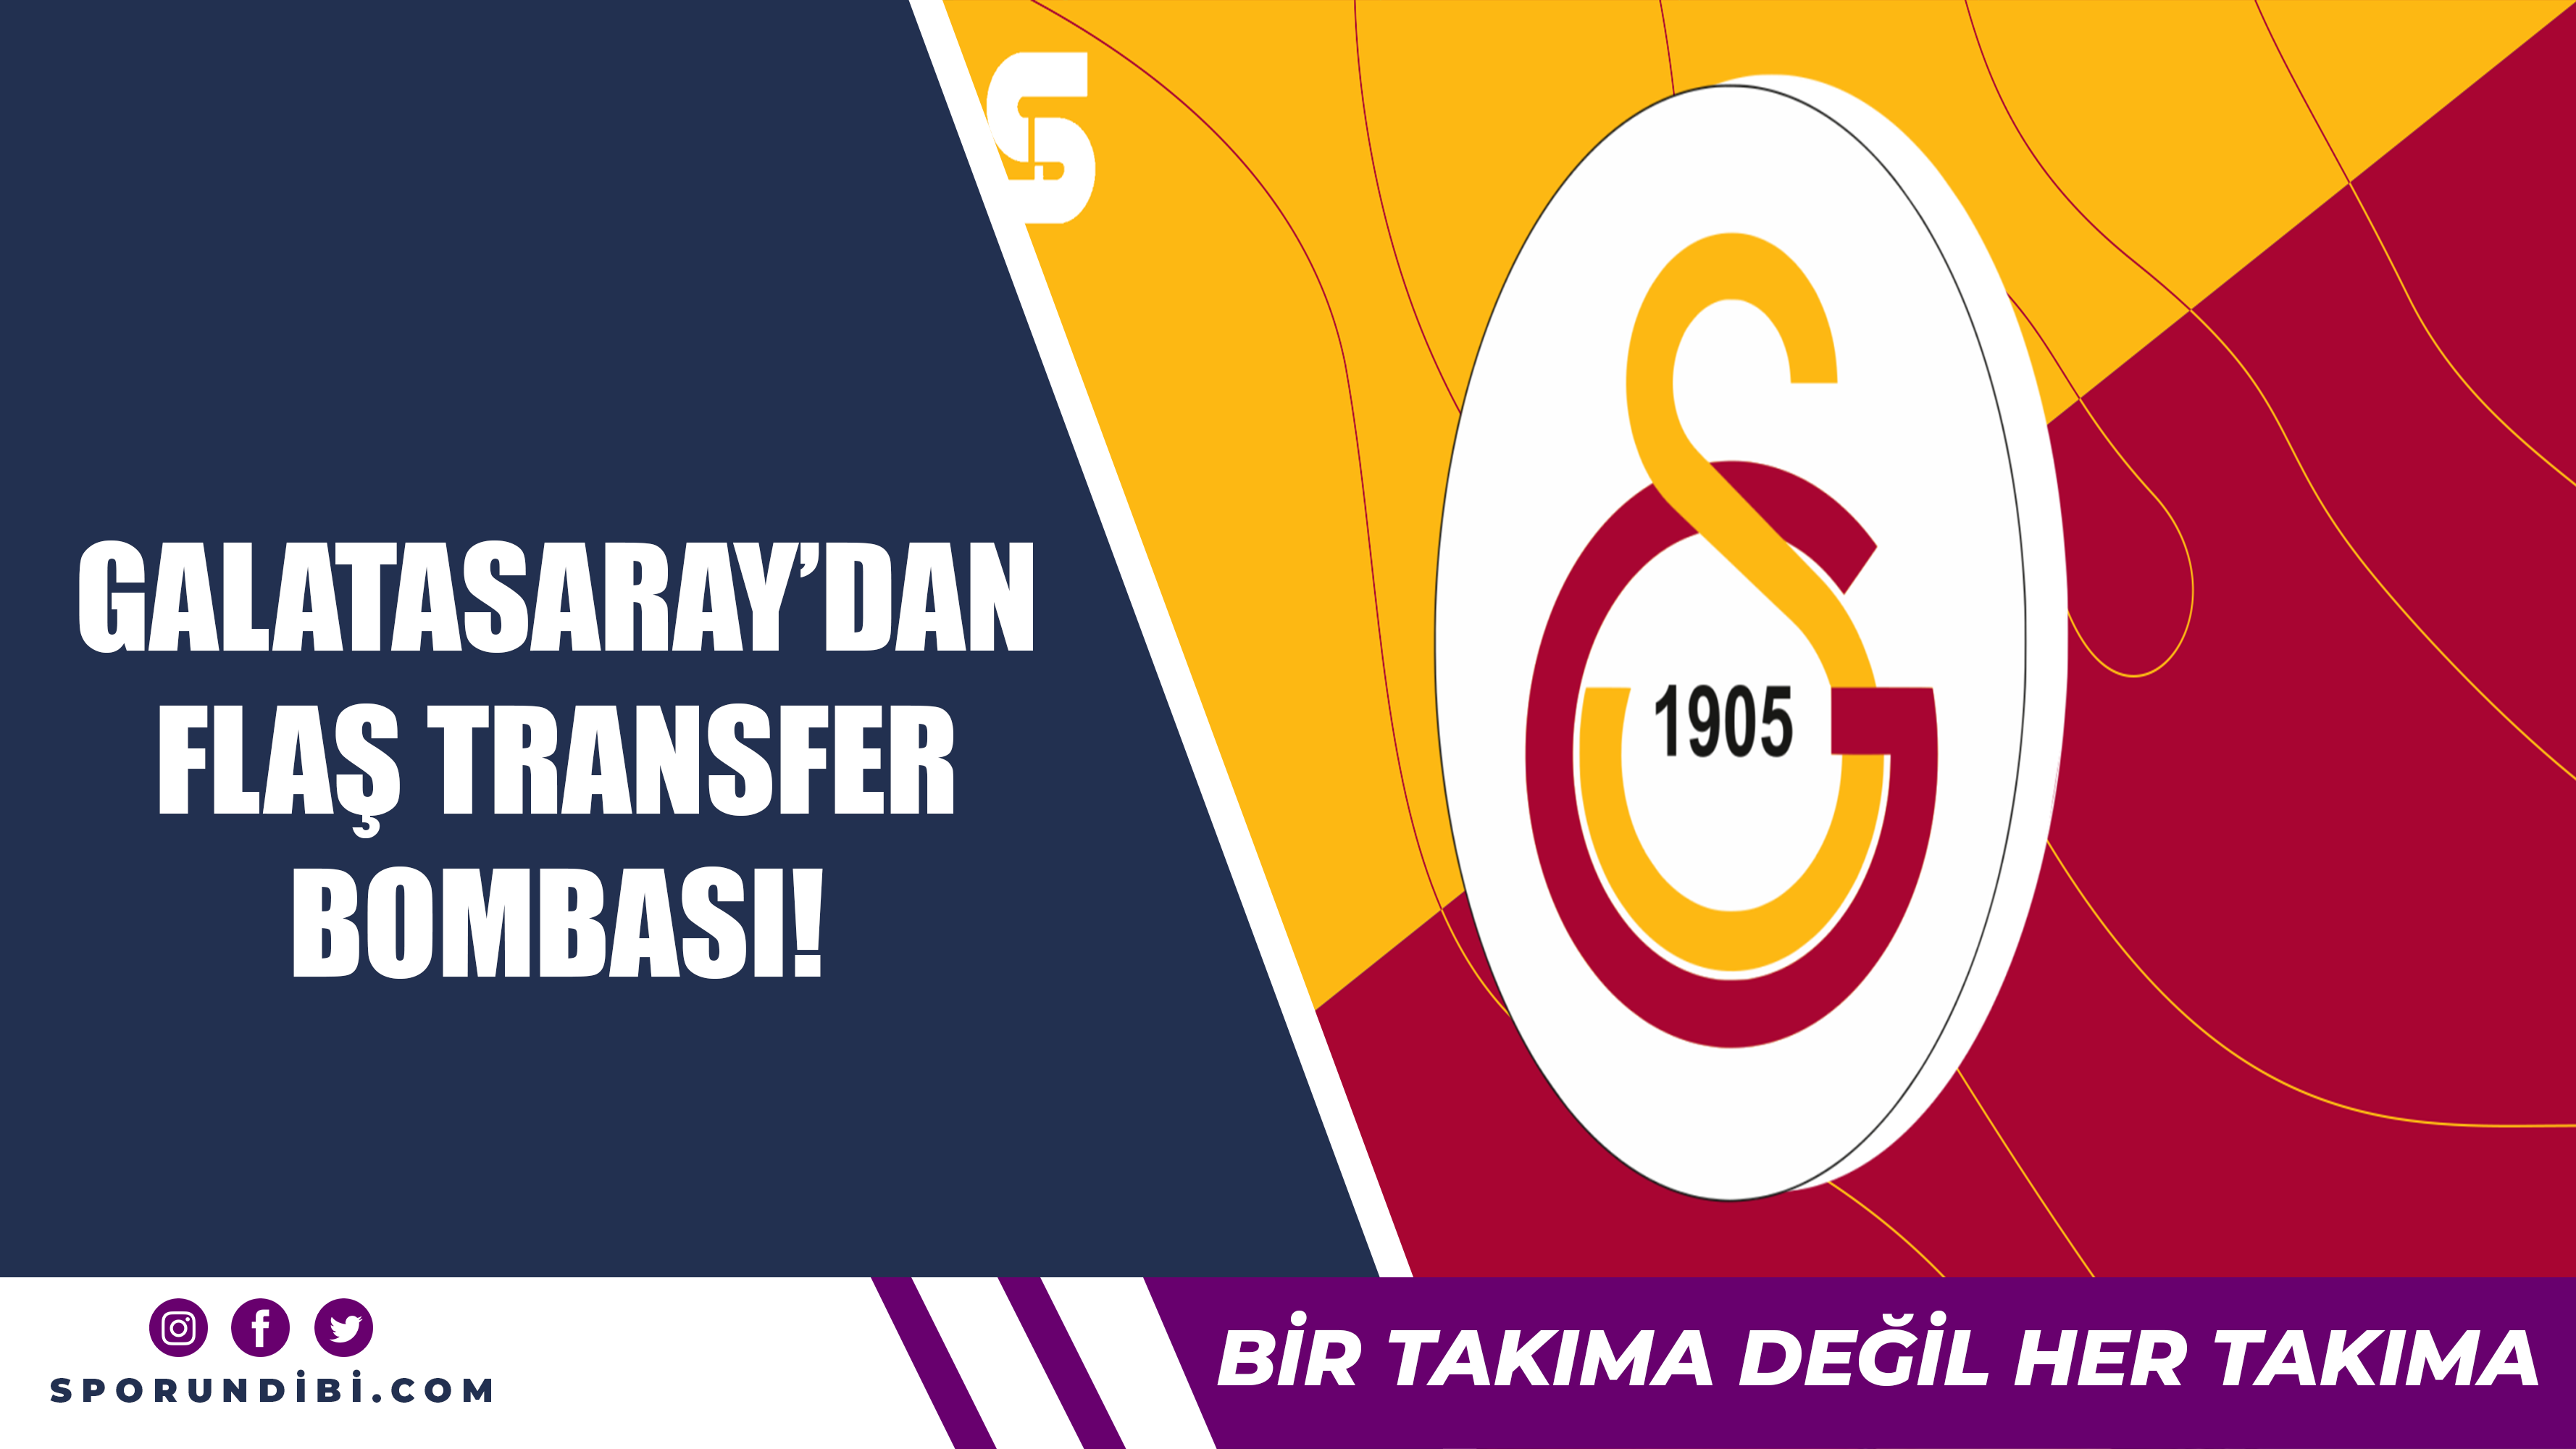 Galatasaray'dan flaş transfer bombası!